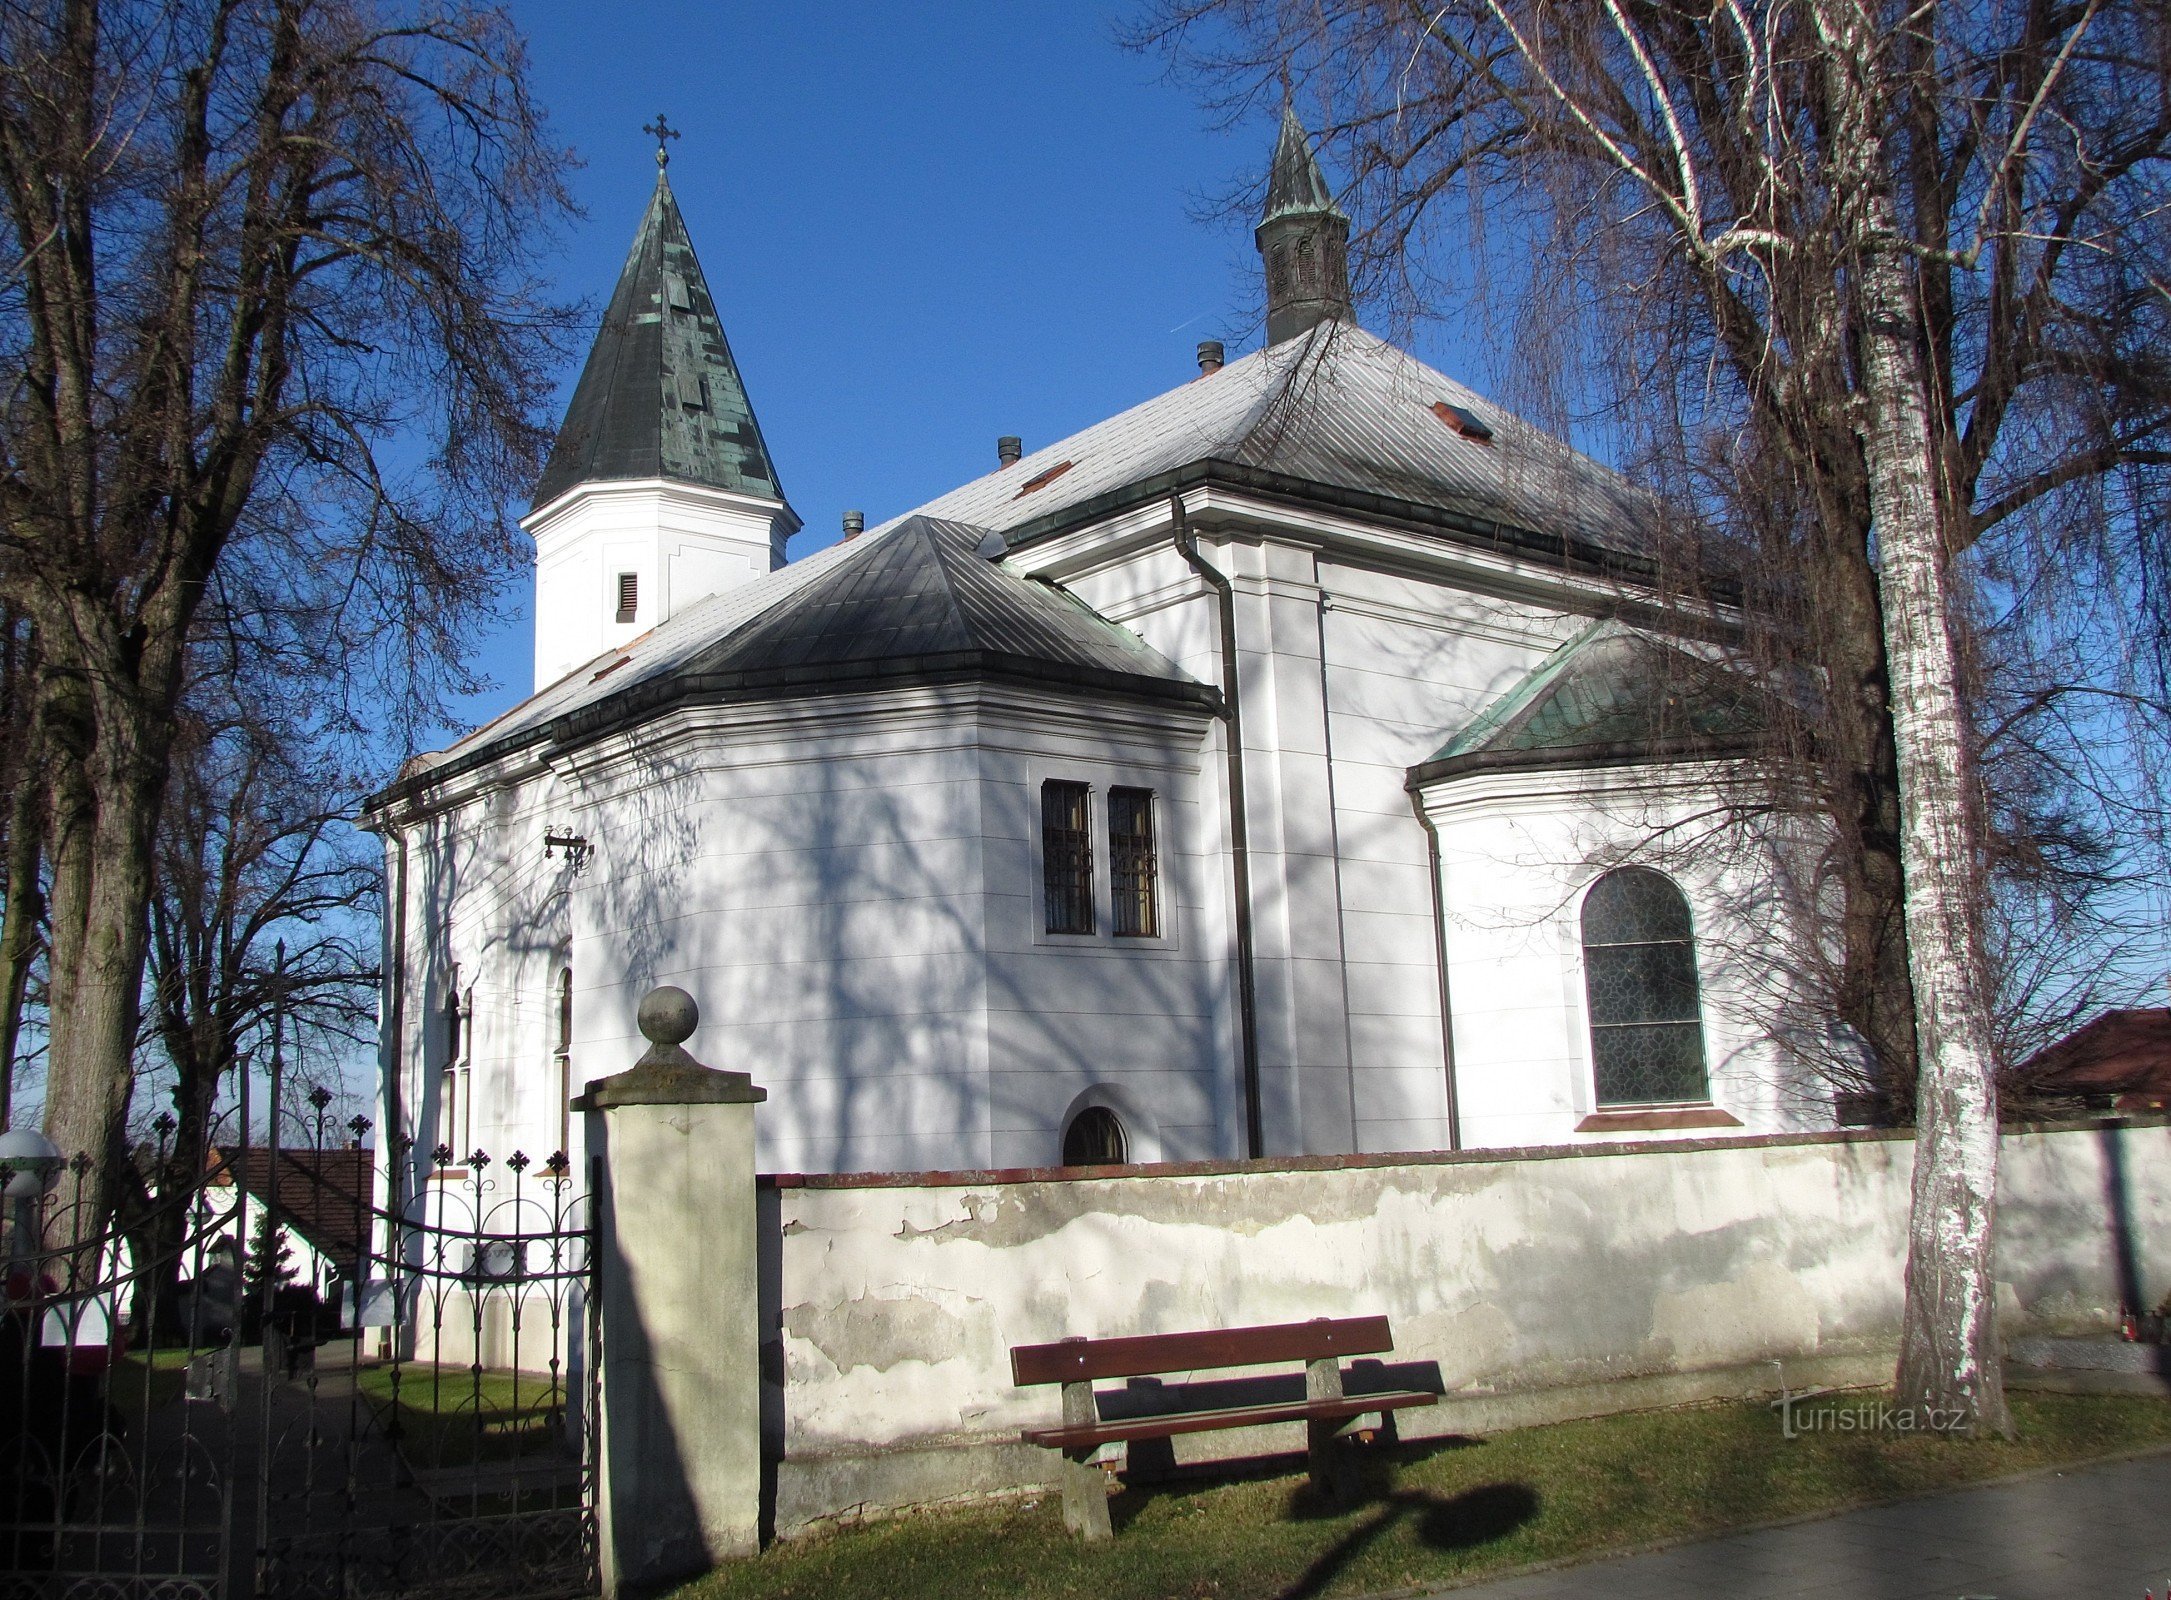 Žeranovice - nhà thờ St. Lawrence